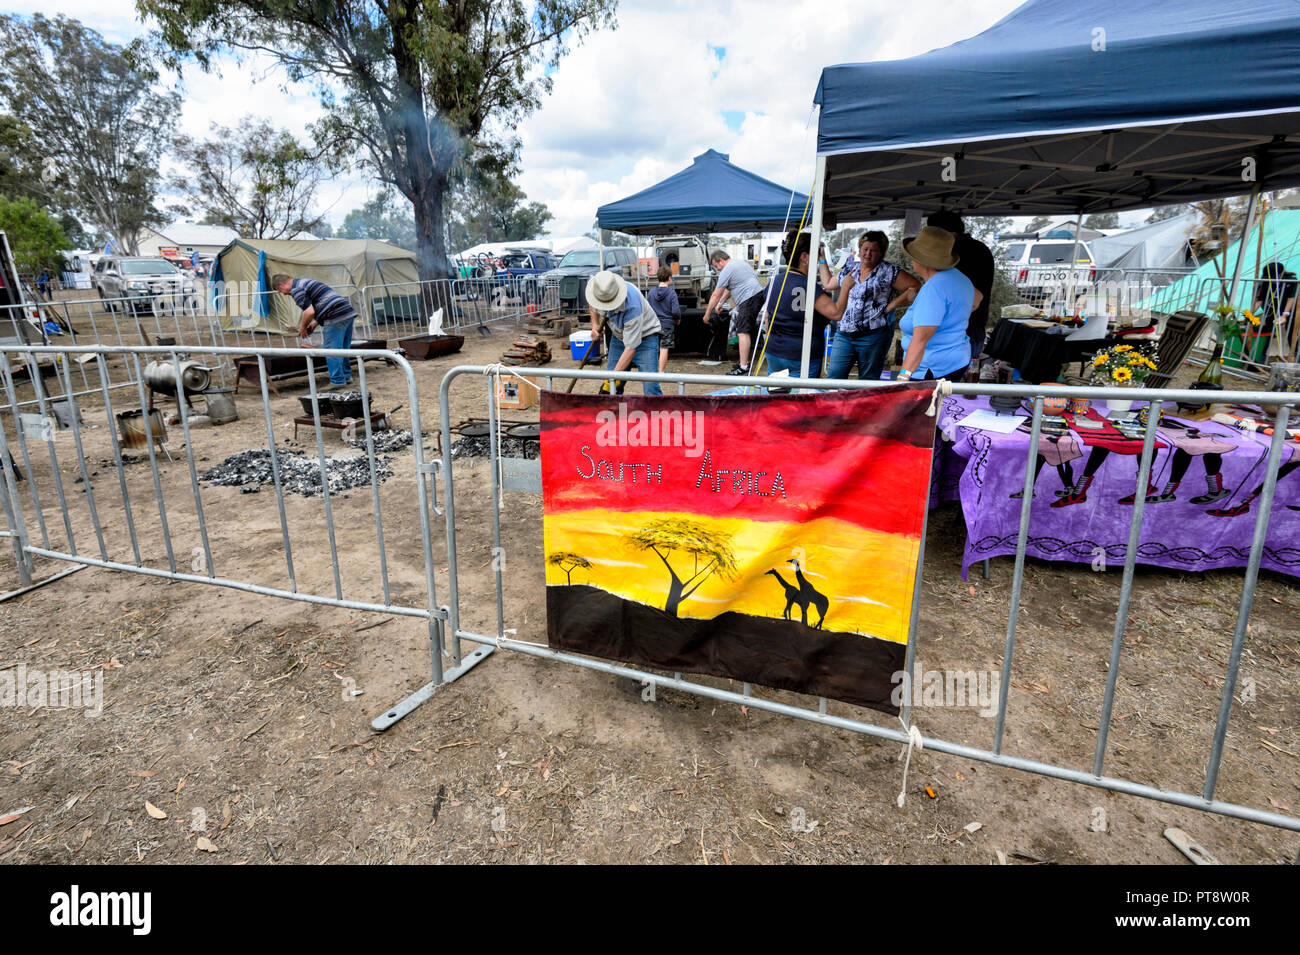 Poitikie la démonstration de cuisine au décrochage de l'Afrique du Sud, Australie, 2018 Camp Festival Four Millmerran, dans le sud du Queensland, Queensland, Australie Banque D'Images